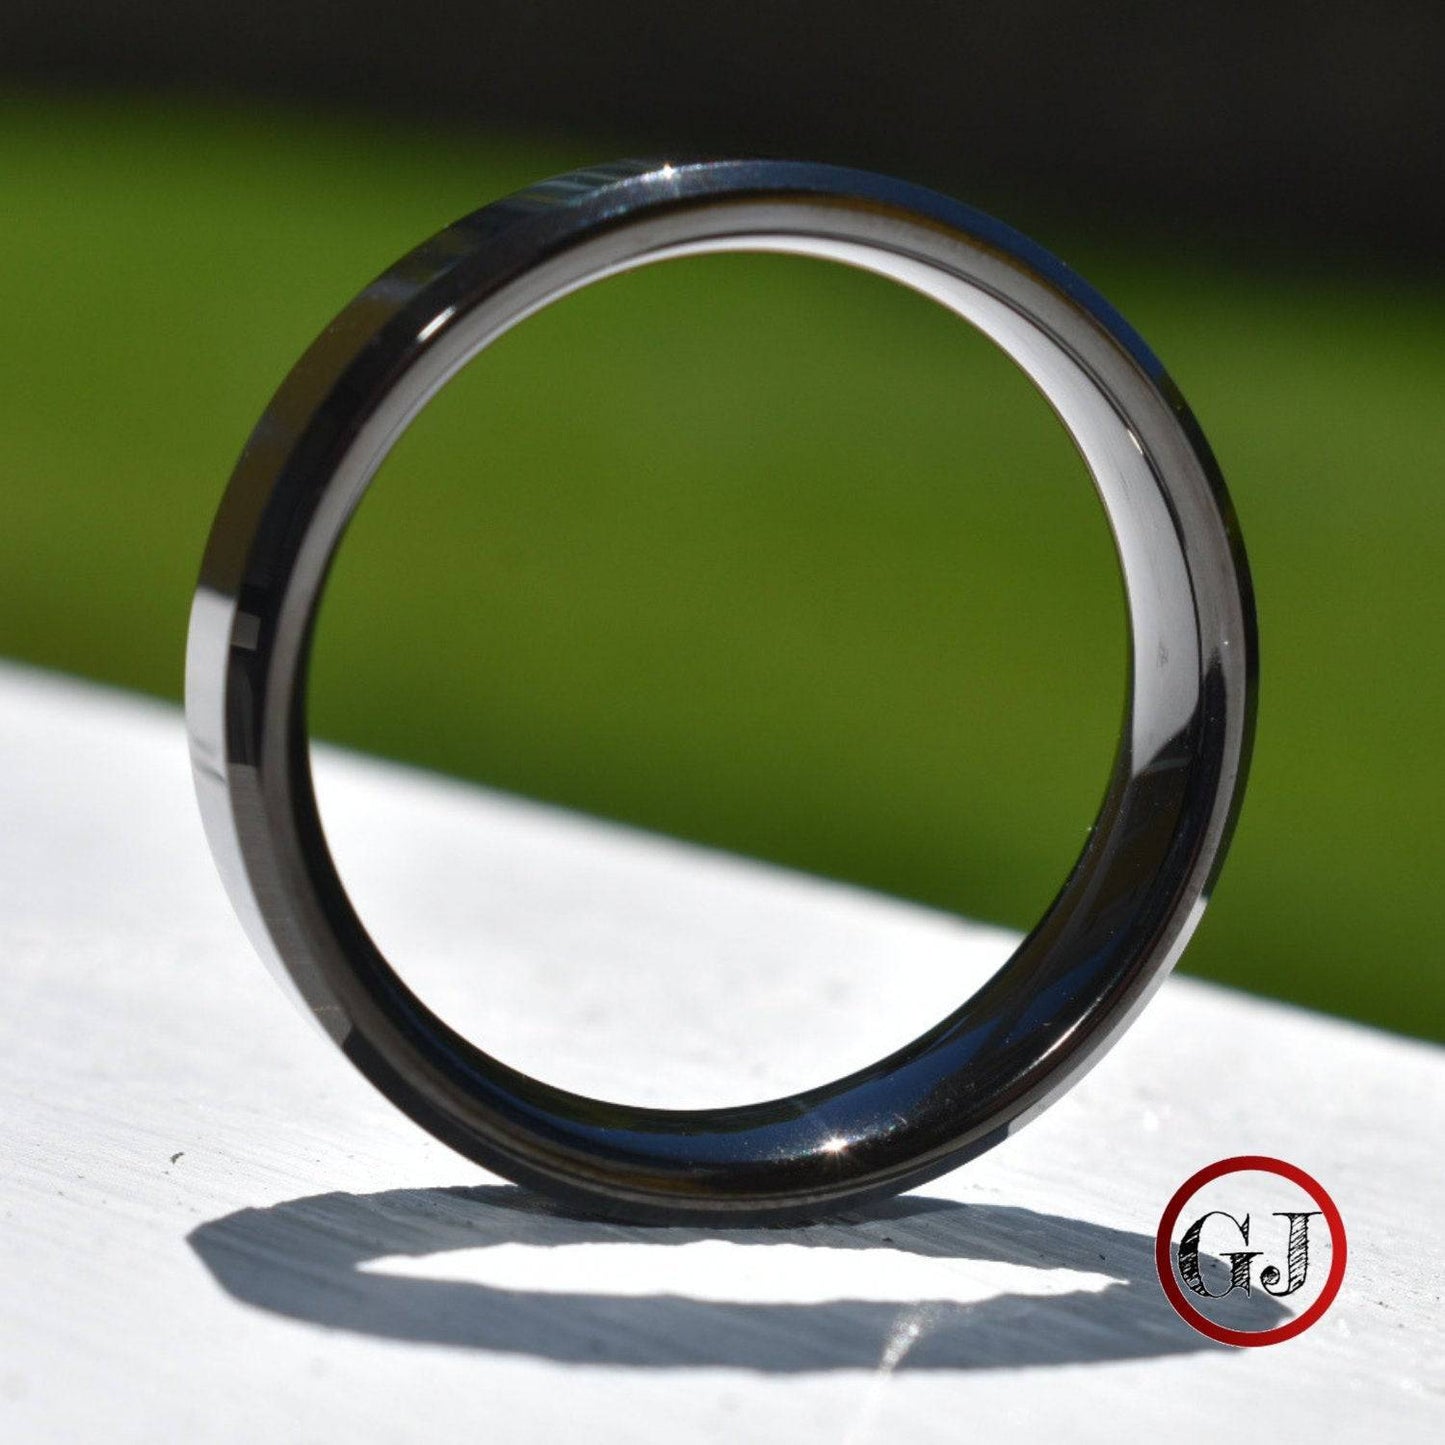 Black 6mm High Polished Tungsten Ring - Tungsten Titans